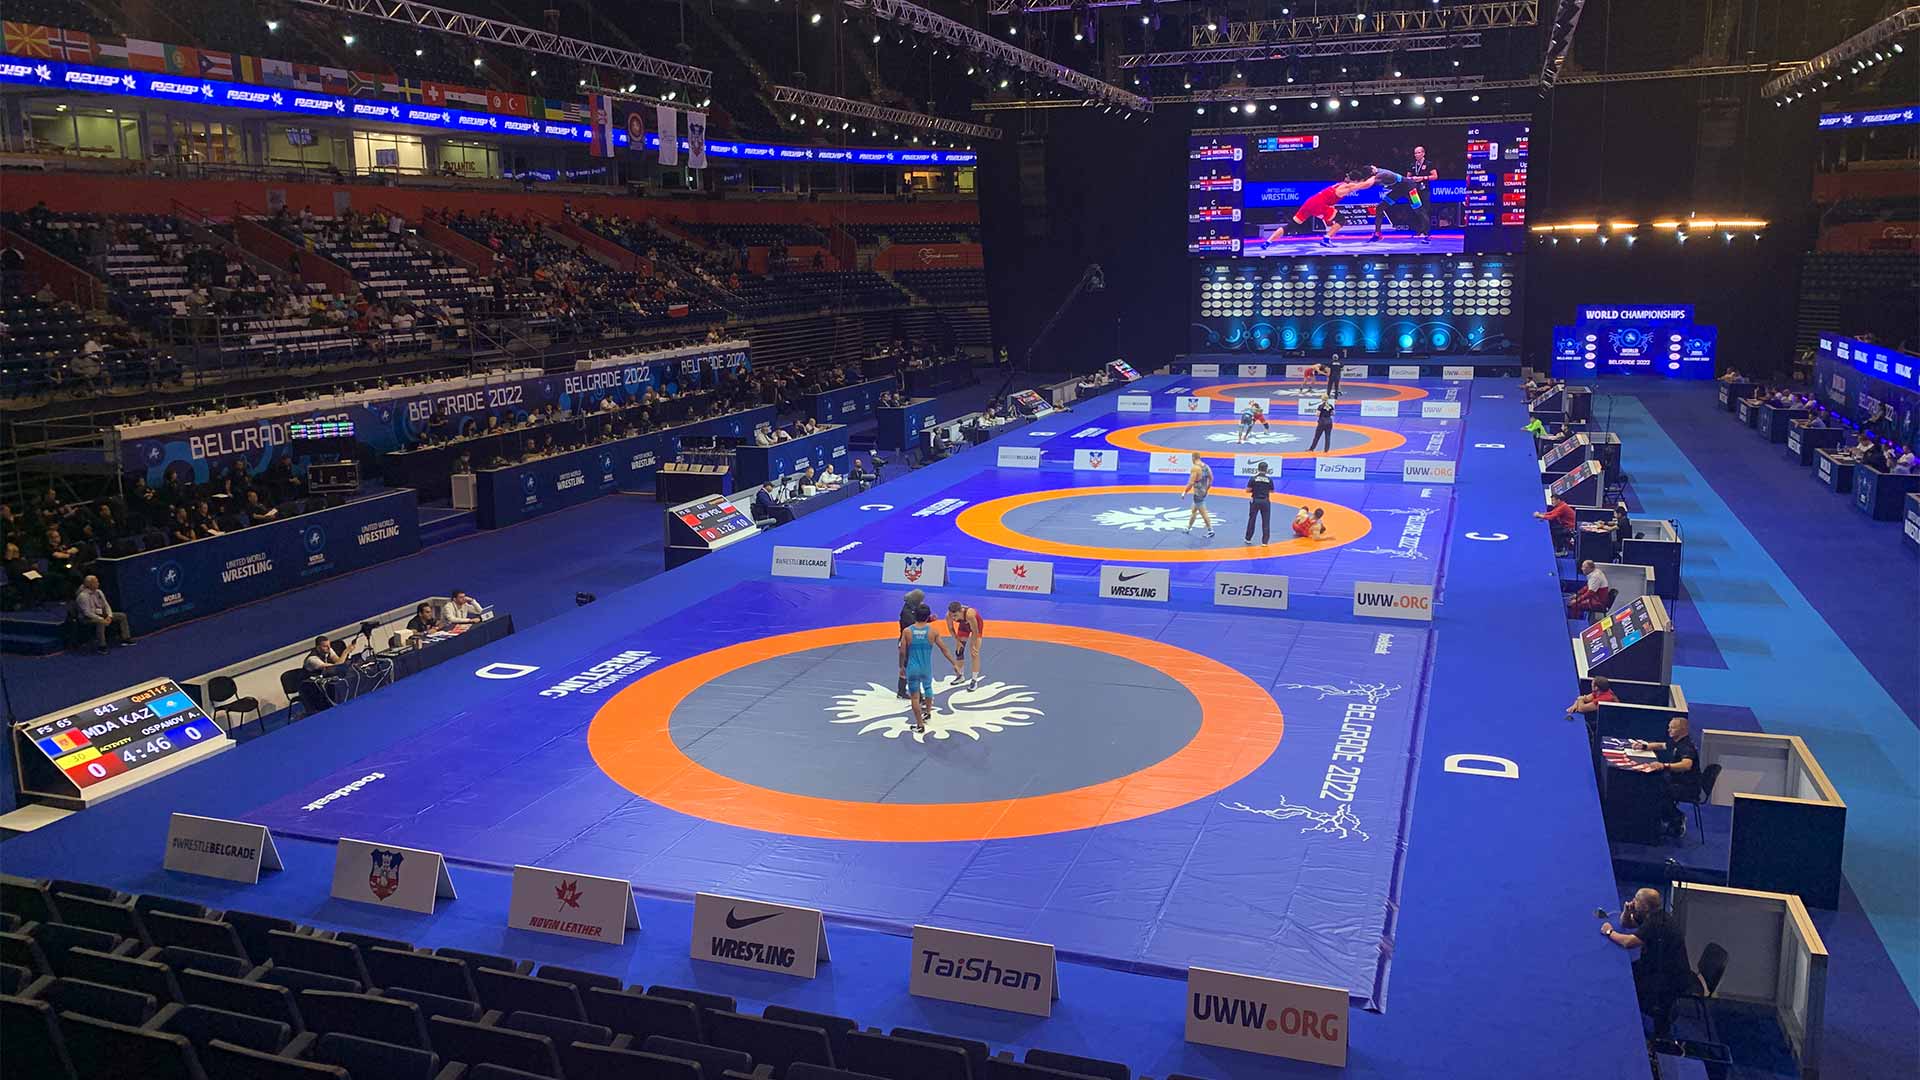 Foeldeak wrestling mats at the World Wrestling Championships 2022 in Belgrade